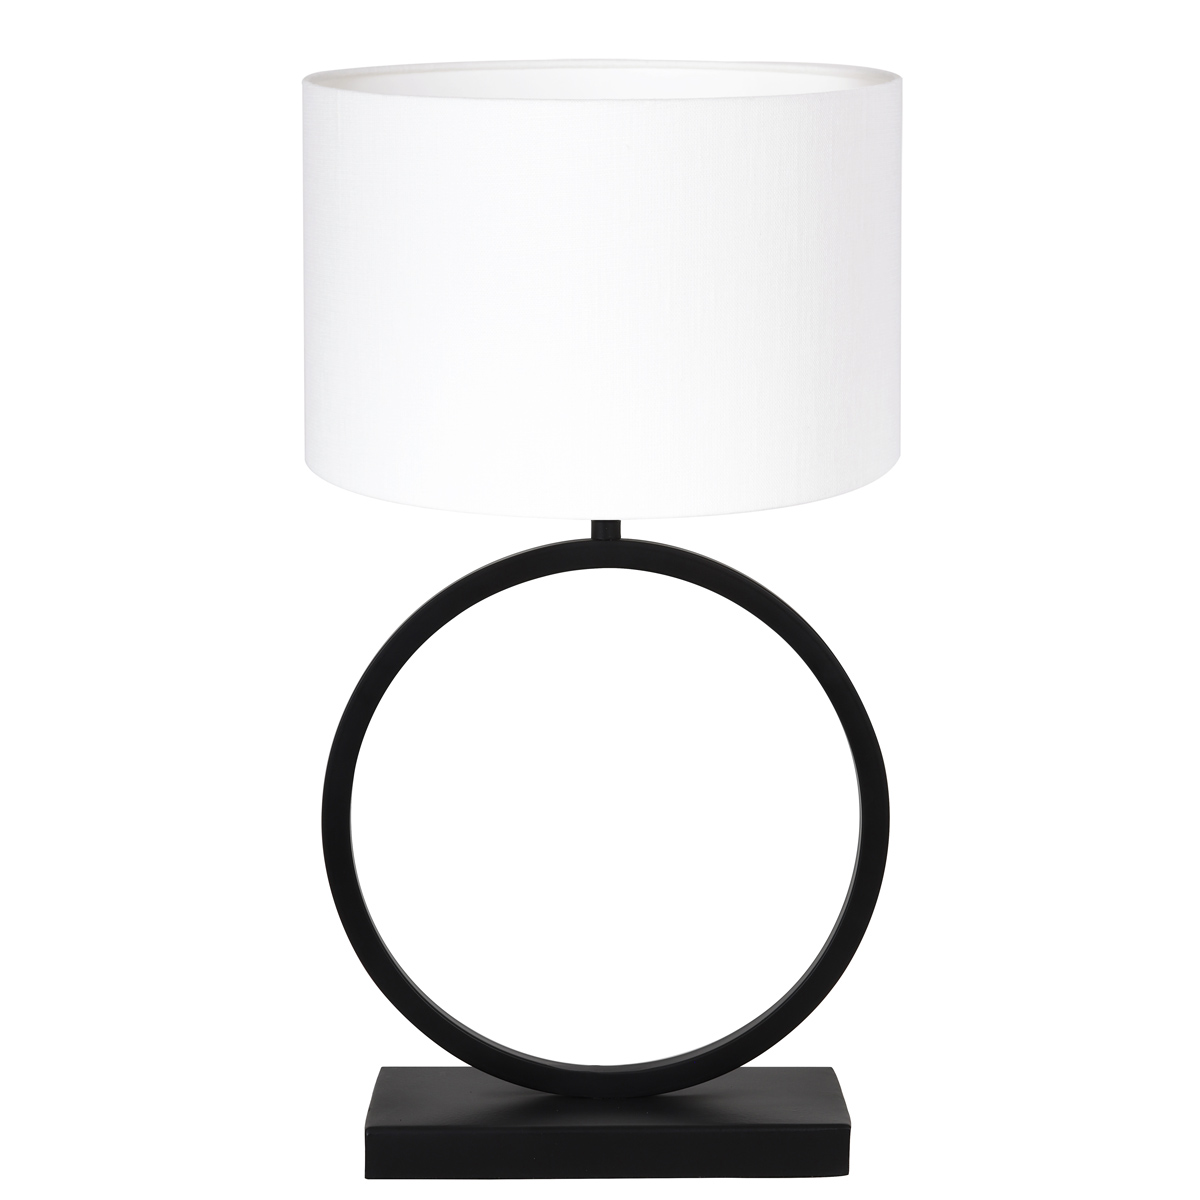 aangrenzend heel veel Broers en zussen Moderne tafellamp met kap rond Liva wit | Industriele lampen online